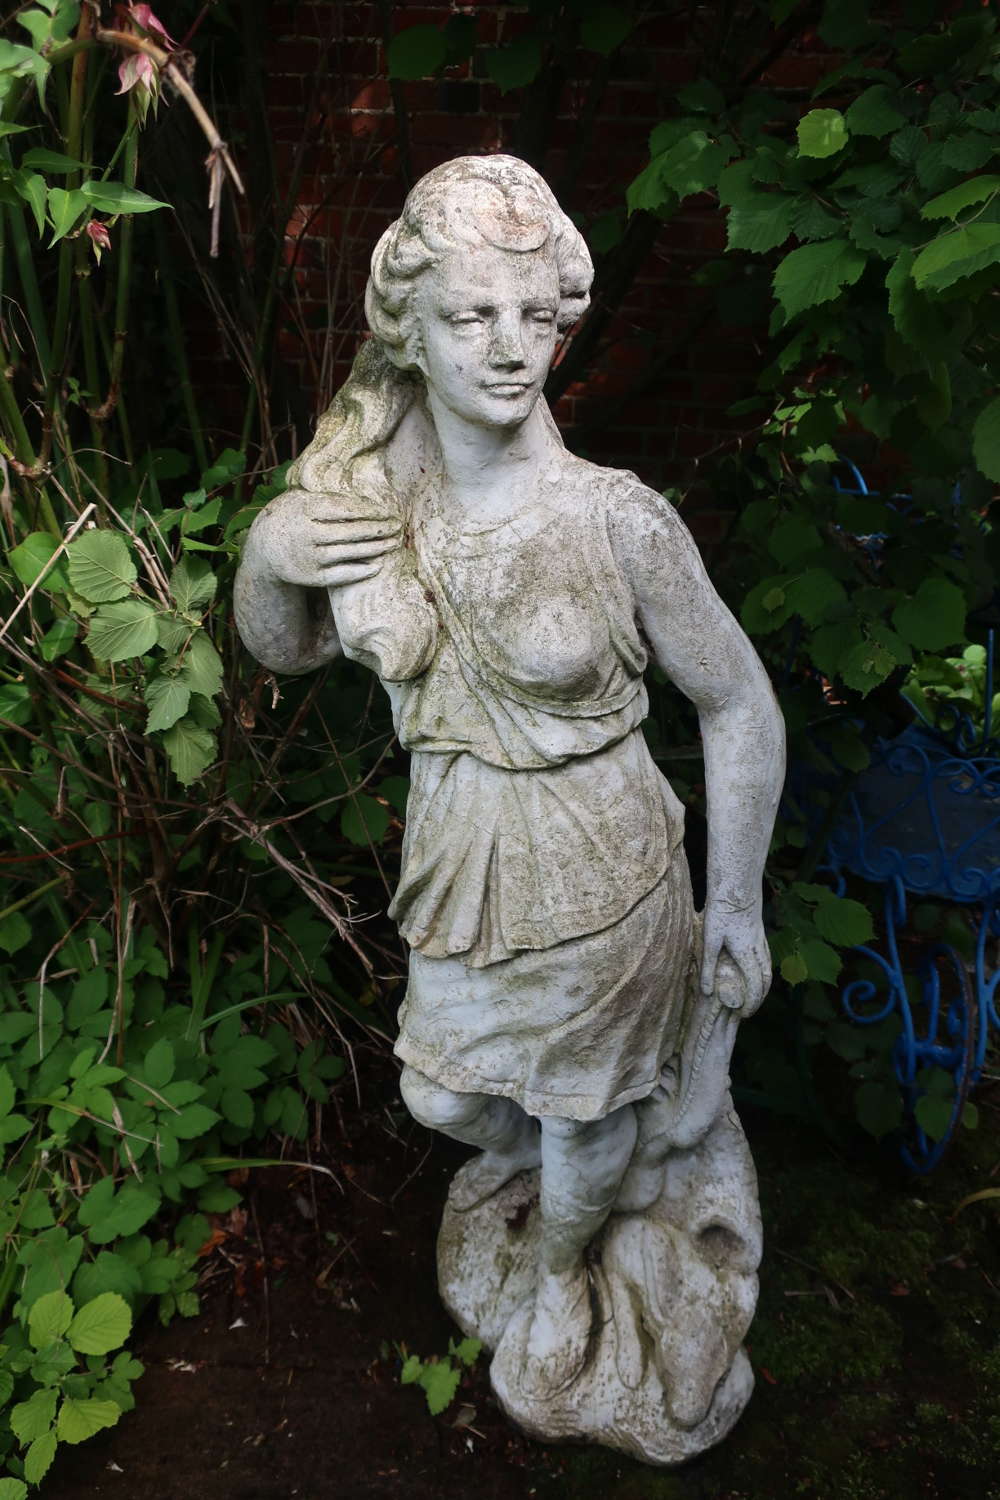 Large garden statue